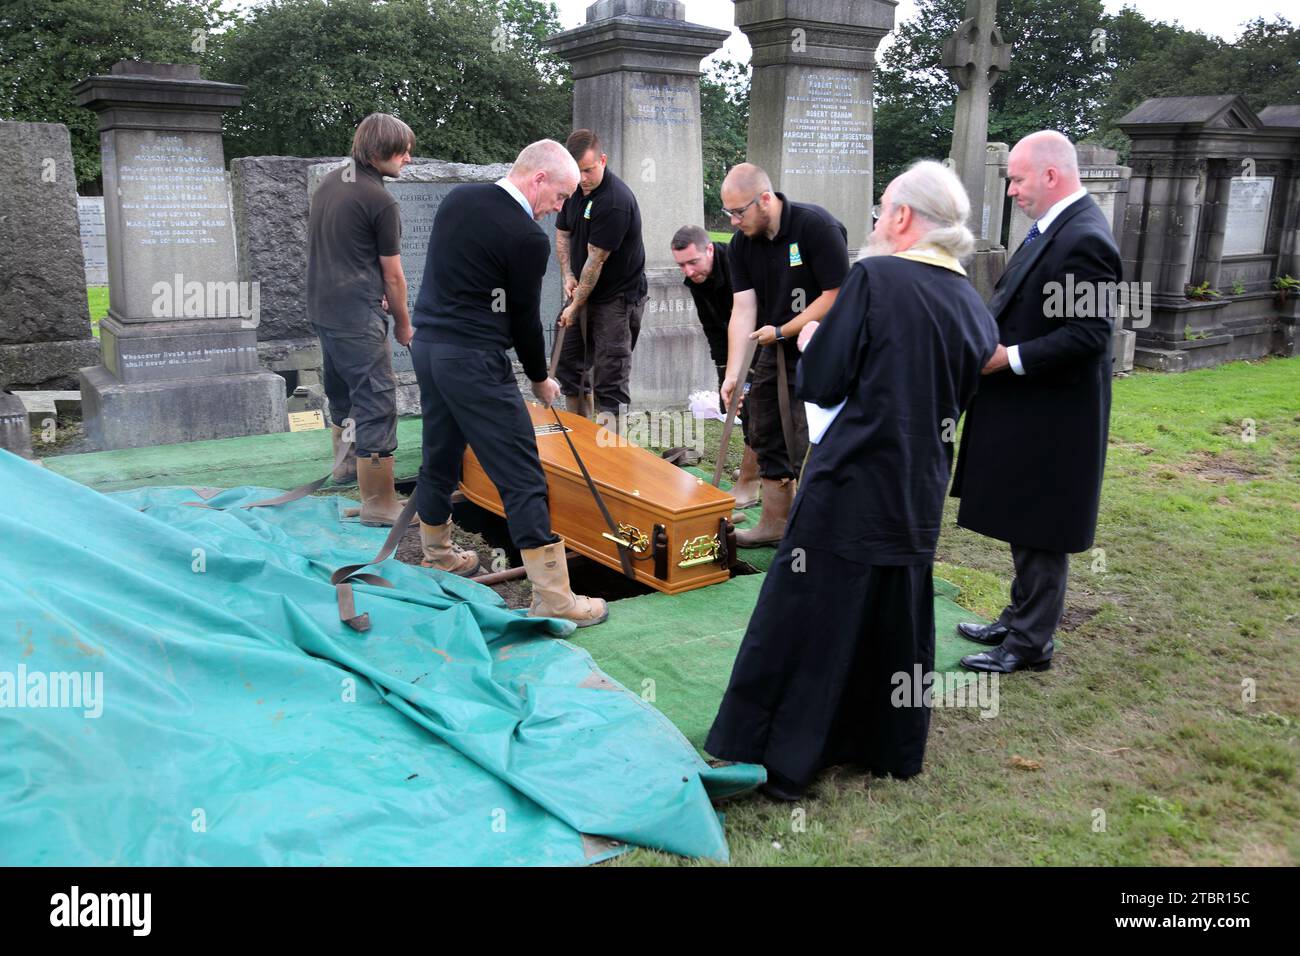 Glasgow Schottland Griechisch-orthodoxe Beerdigung in Glasgow Necropolis - Priester, der den Committal Service durchführt, während der Sarg manuell in die GRA abgesenkt wird Stockfoto